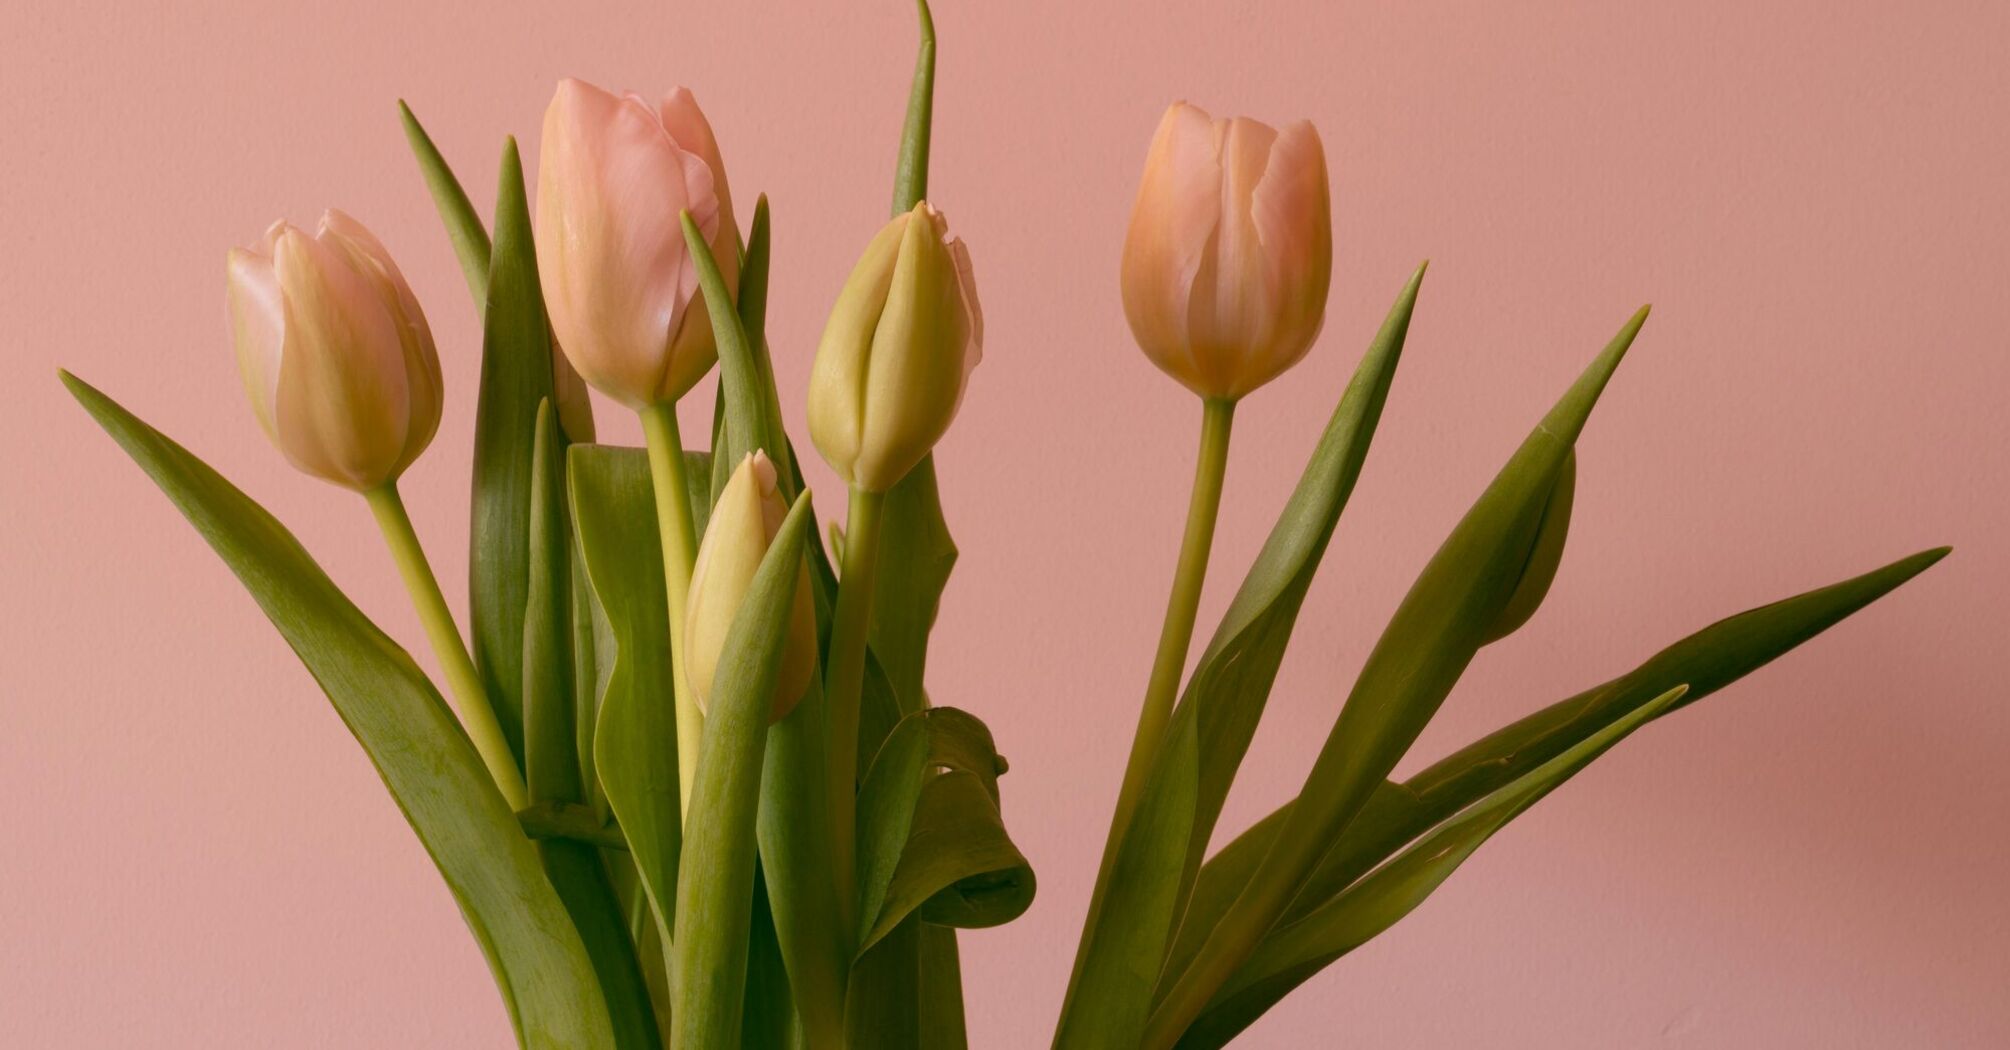 Tulips flower arrangement